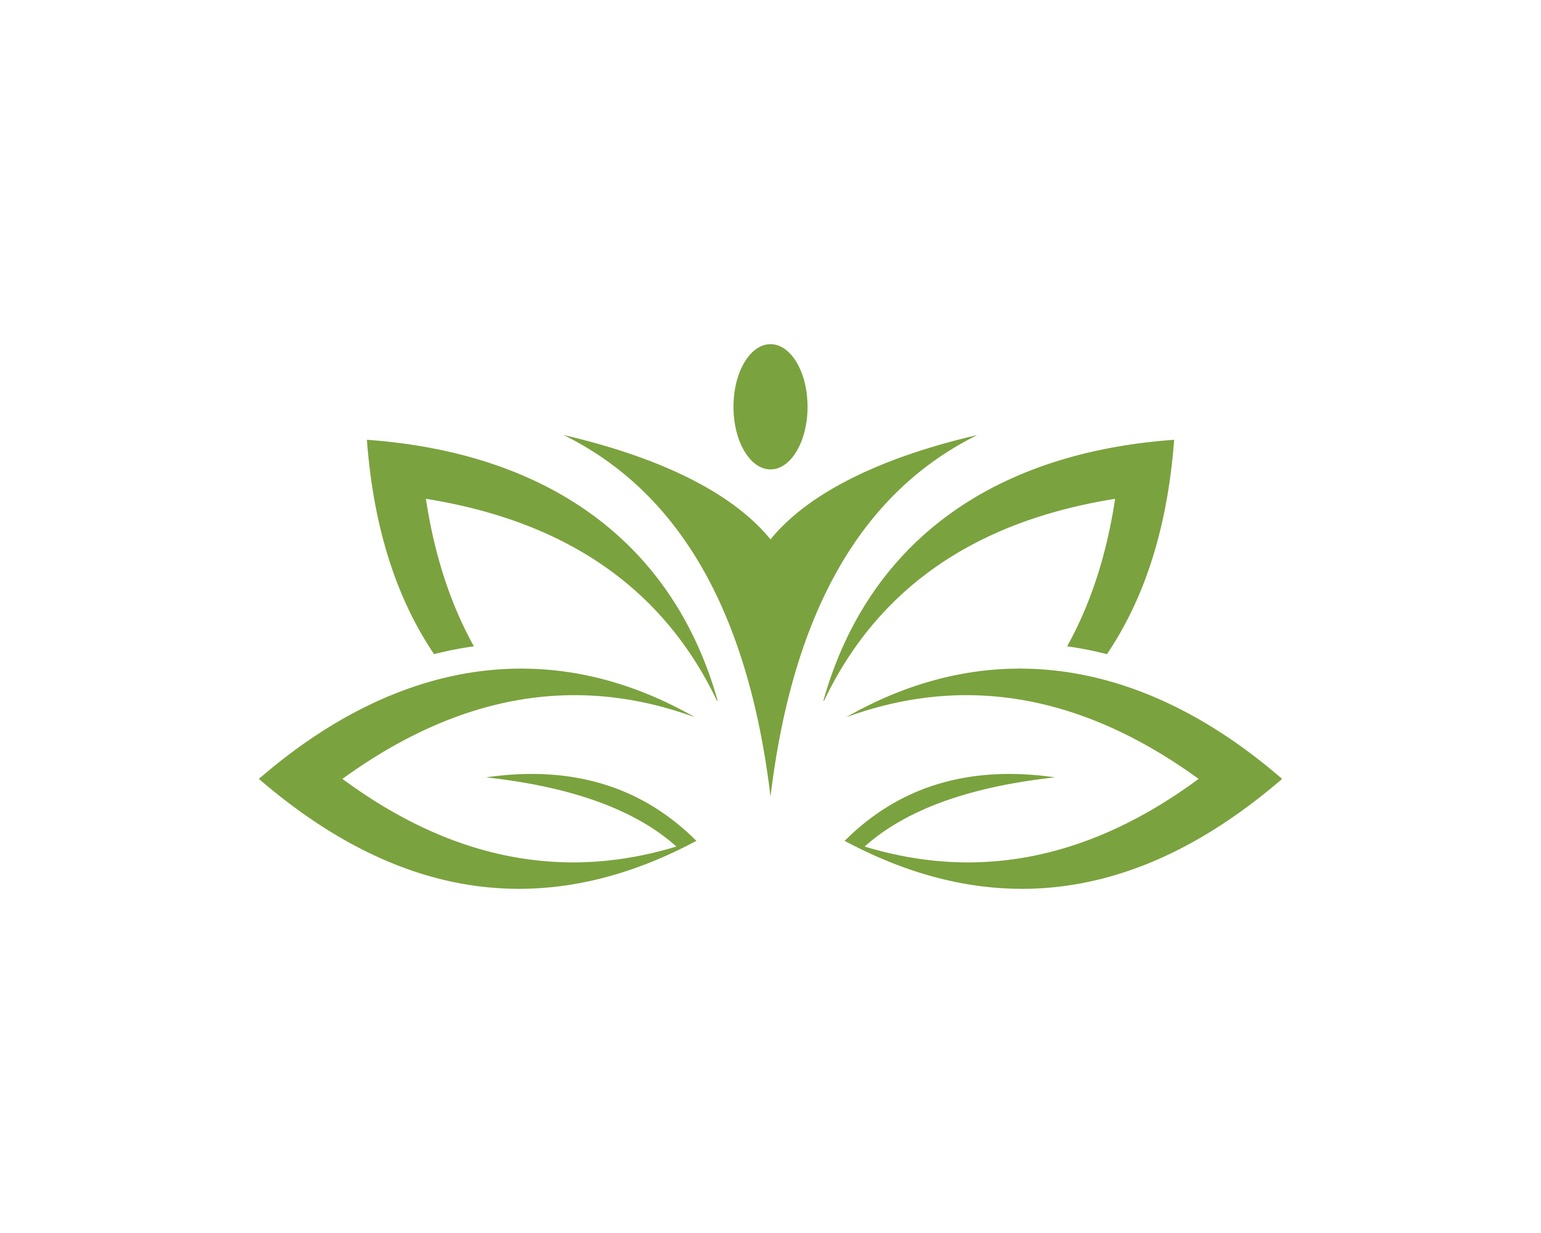 floral logo